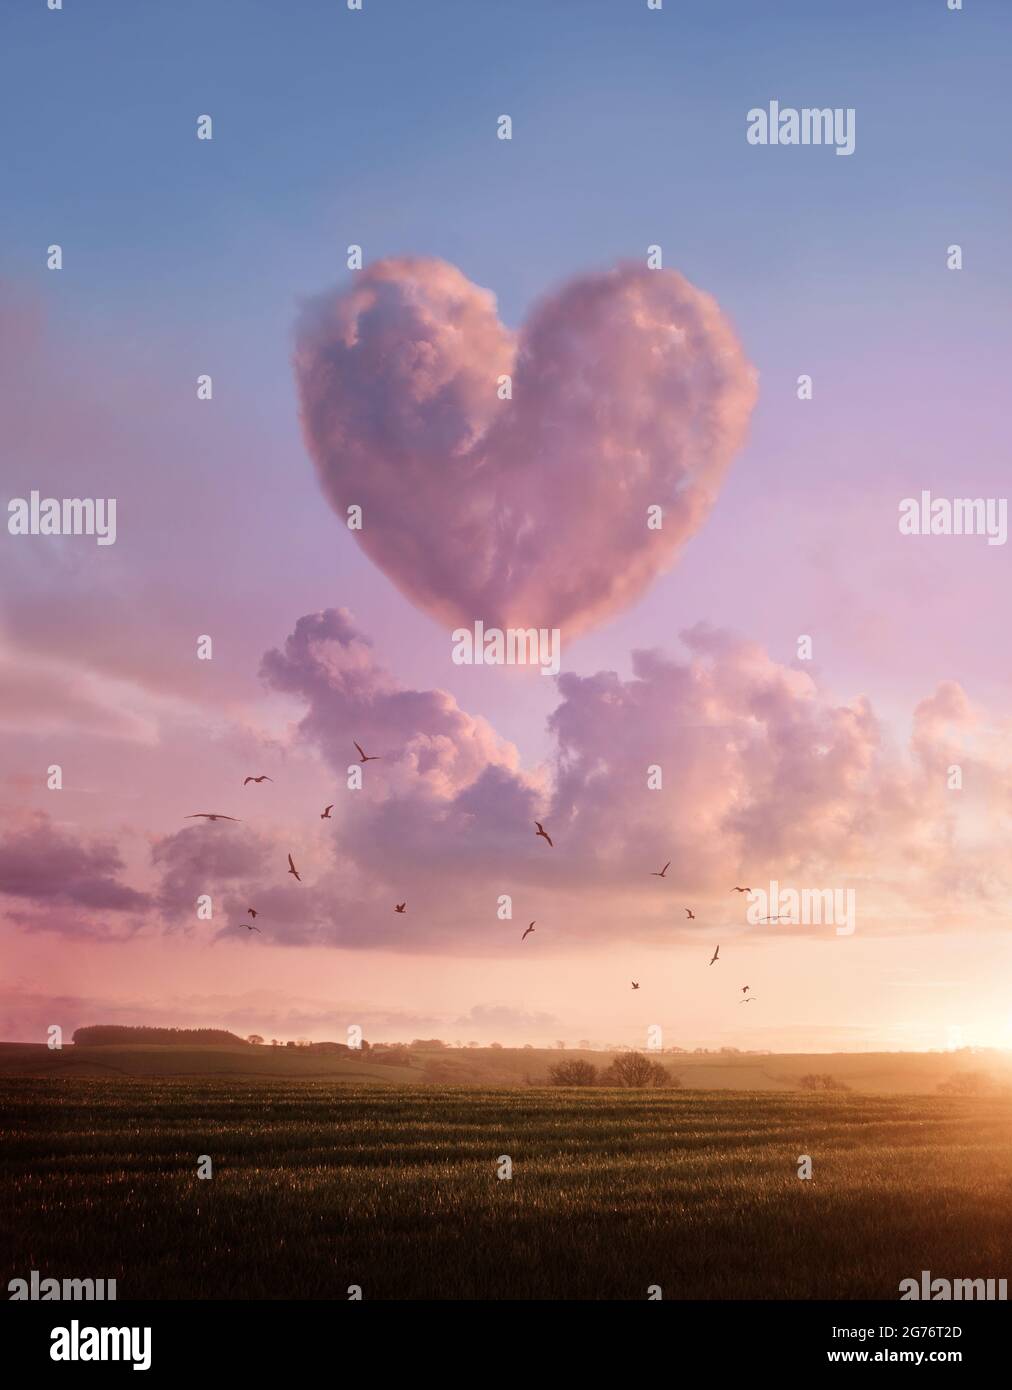 Un coucher de soleil paysage avec un nuage rose en forme de fluffyheart. Illustration de concept Love and Likes. Banque D'Images